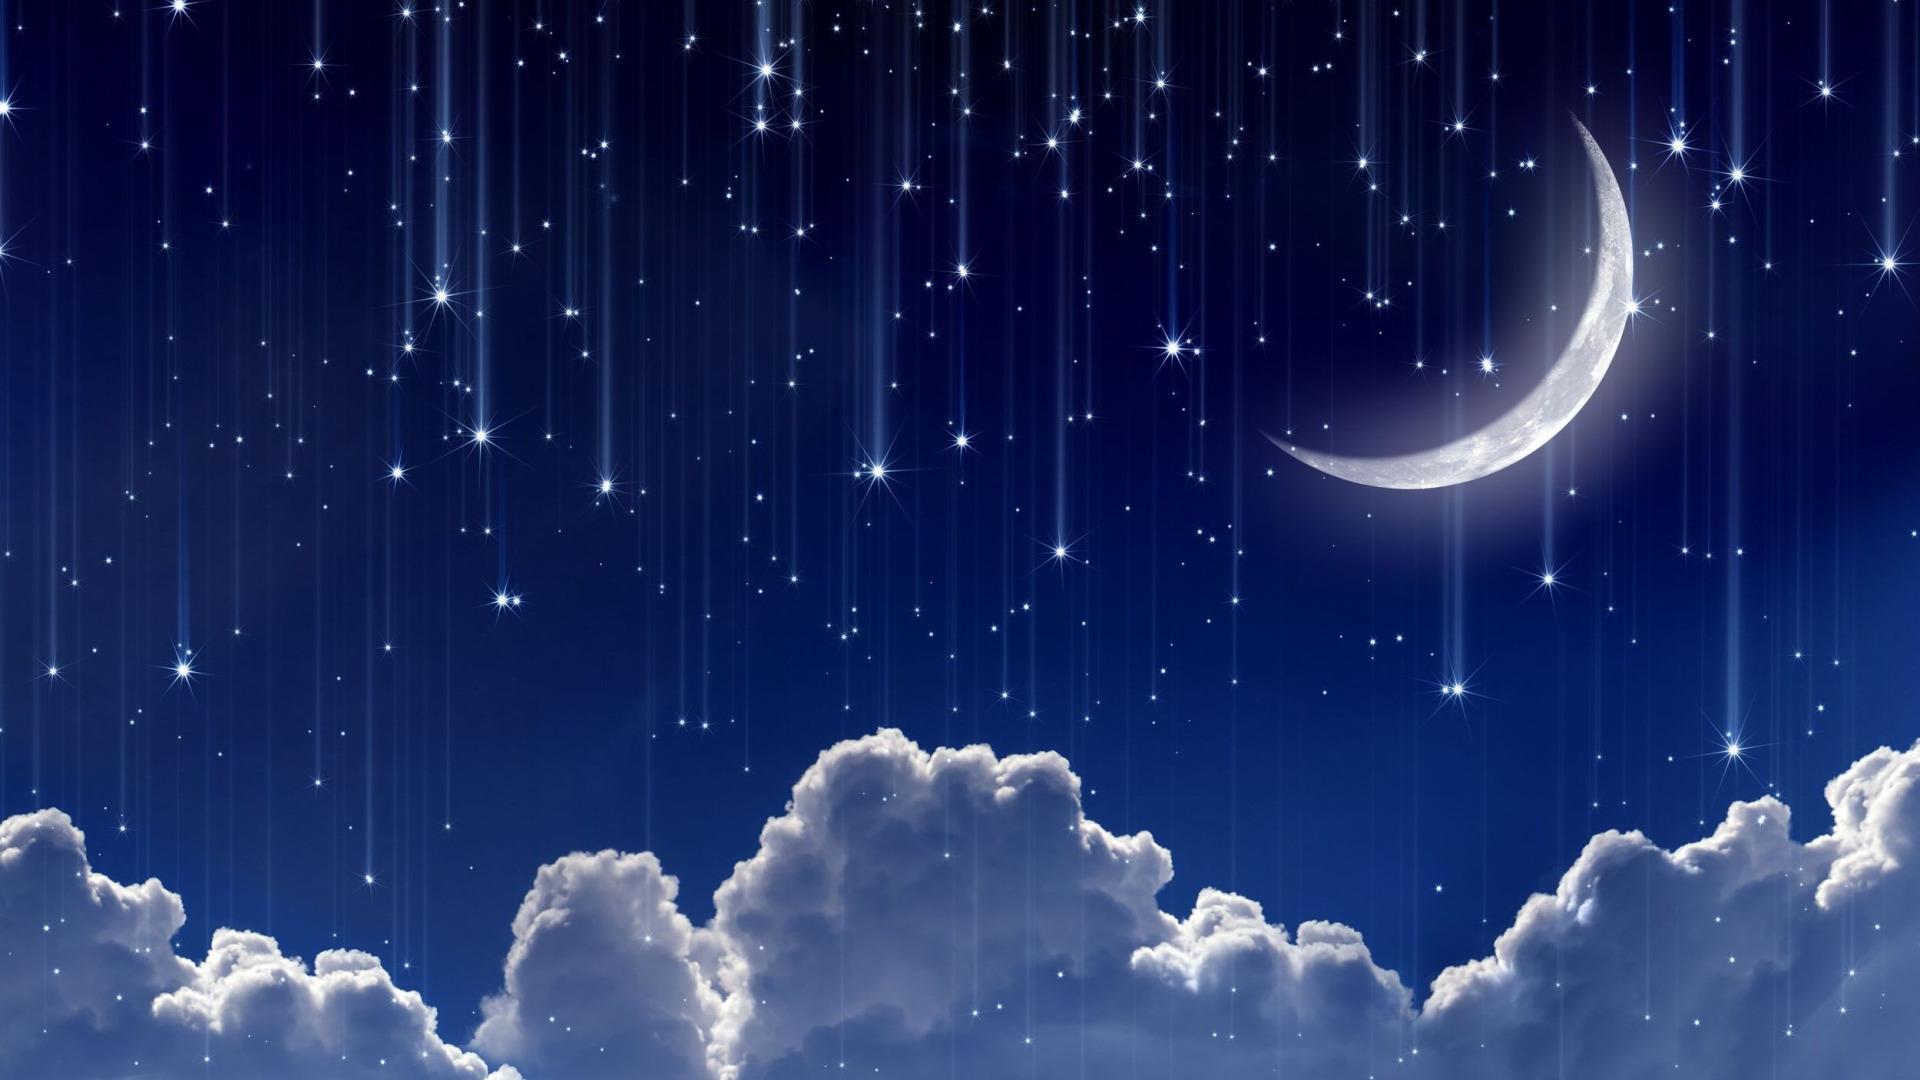 картинки : небо, звезда, атмосфера, темно, Синий, Галактика, туманность,  Космическое пространство, ночью, Астрономия, Звезды, Полночь, astronomical  object 1920x1280 - - 1347056 - красивые картинки - PxHere